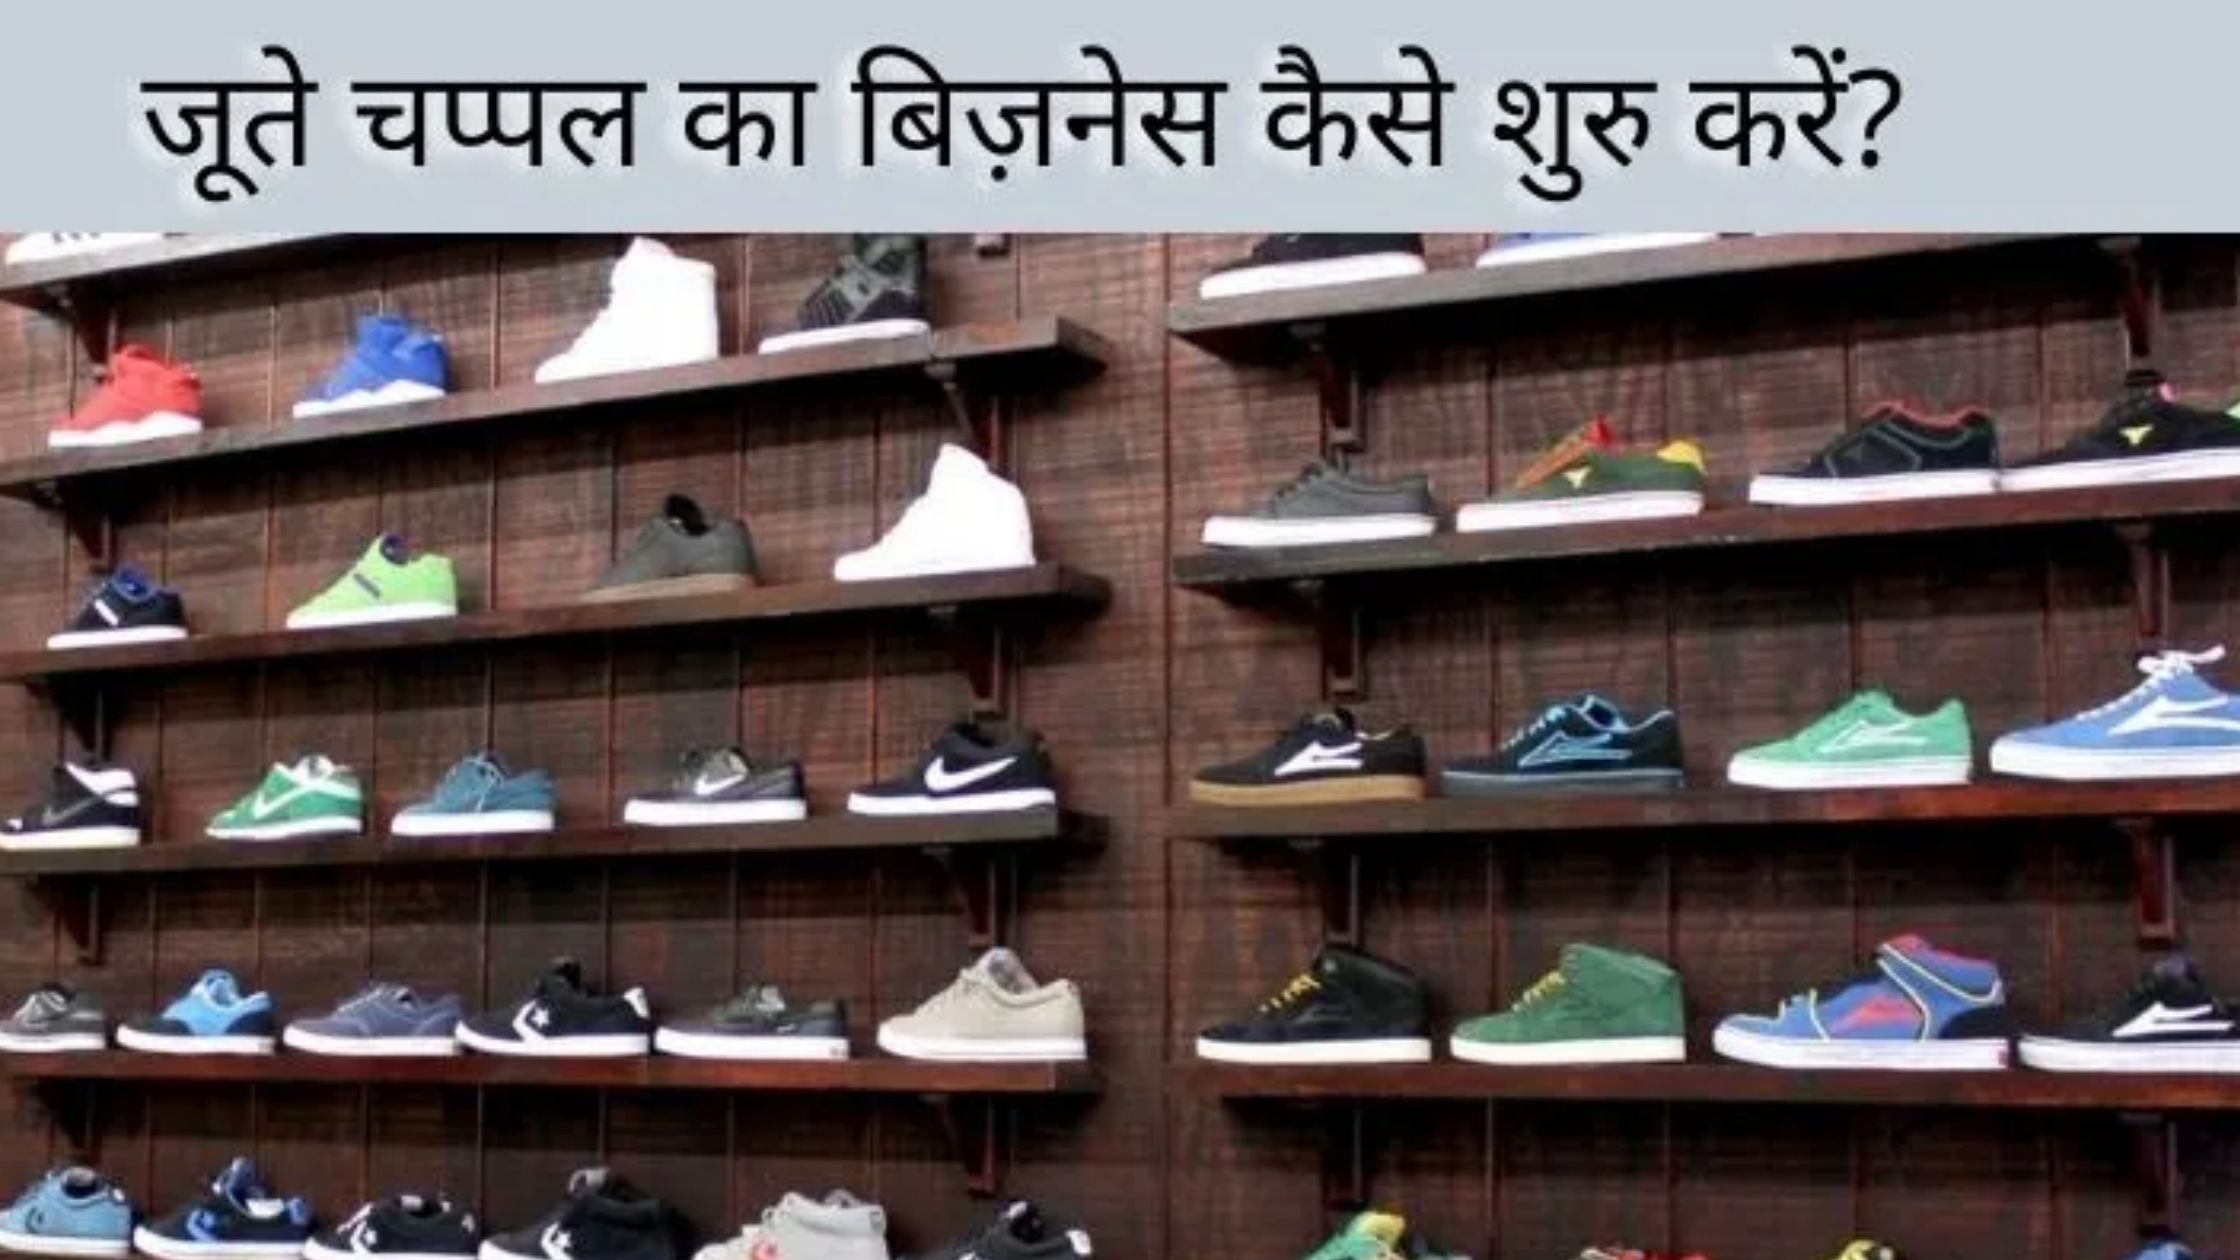 Footwear business in Hindi: जूते चप्पल का बिज़नेस कैसे शुरु करें?